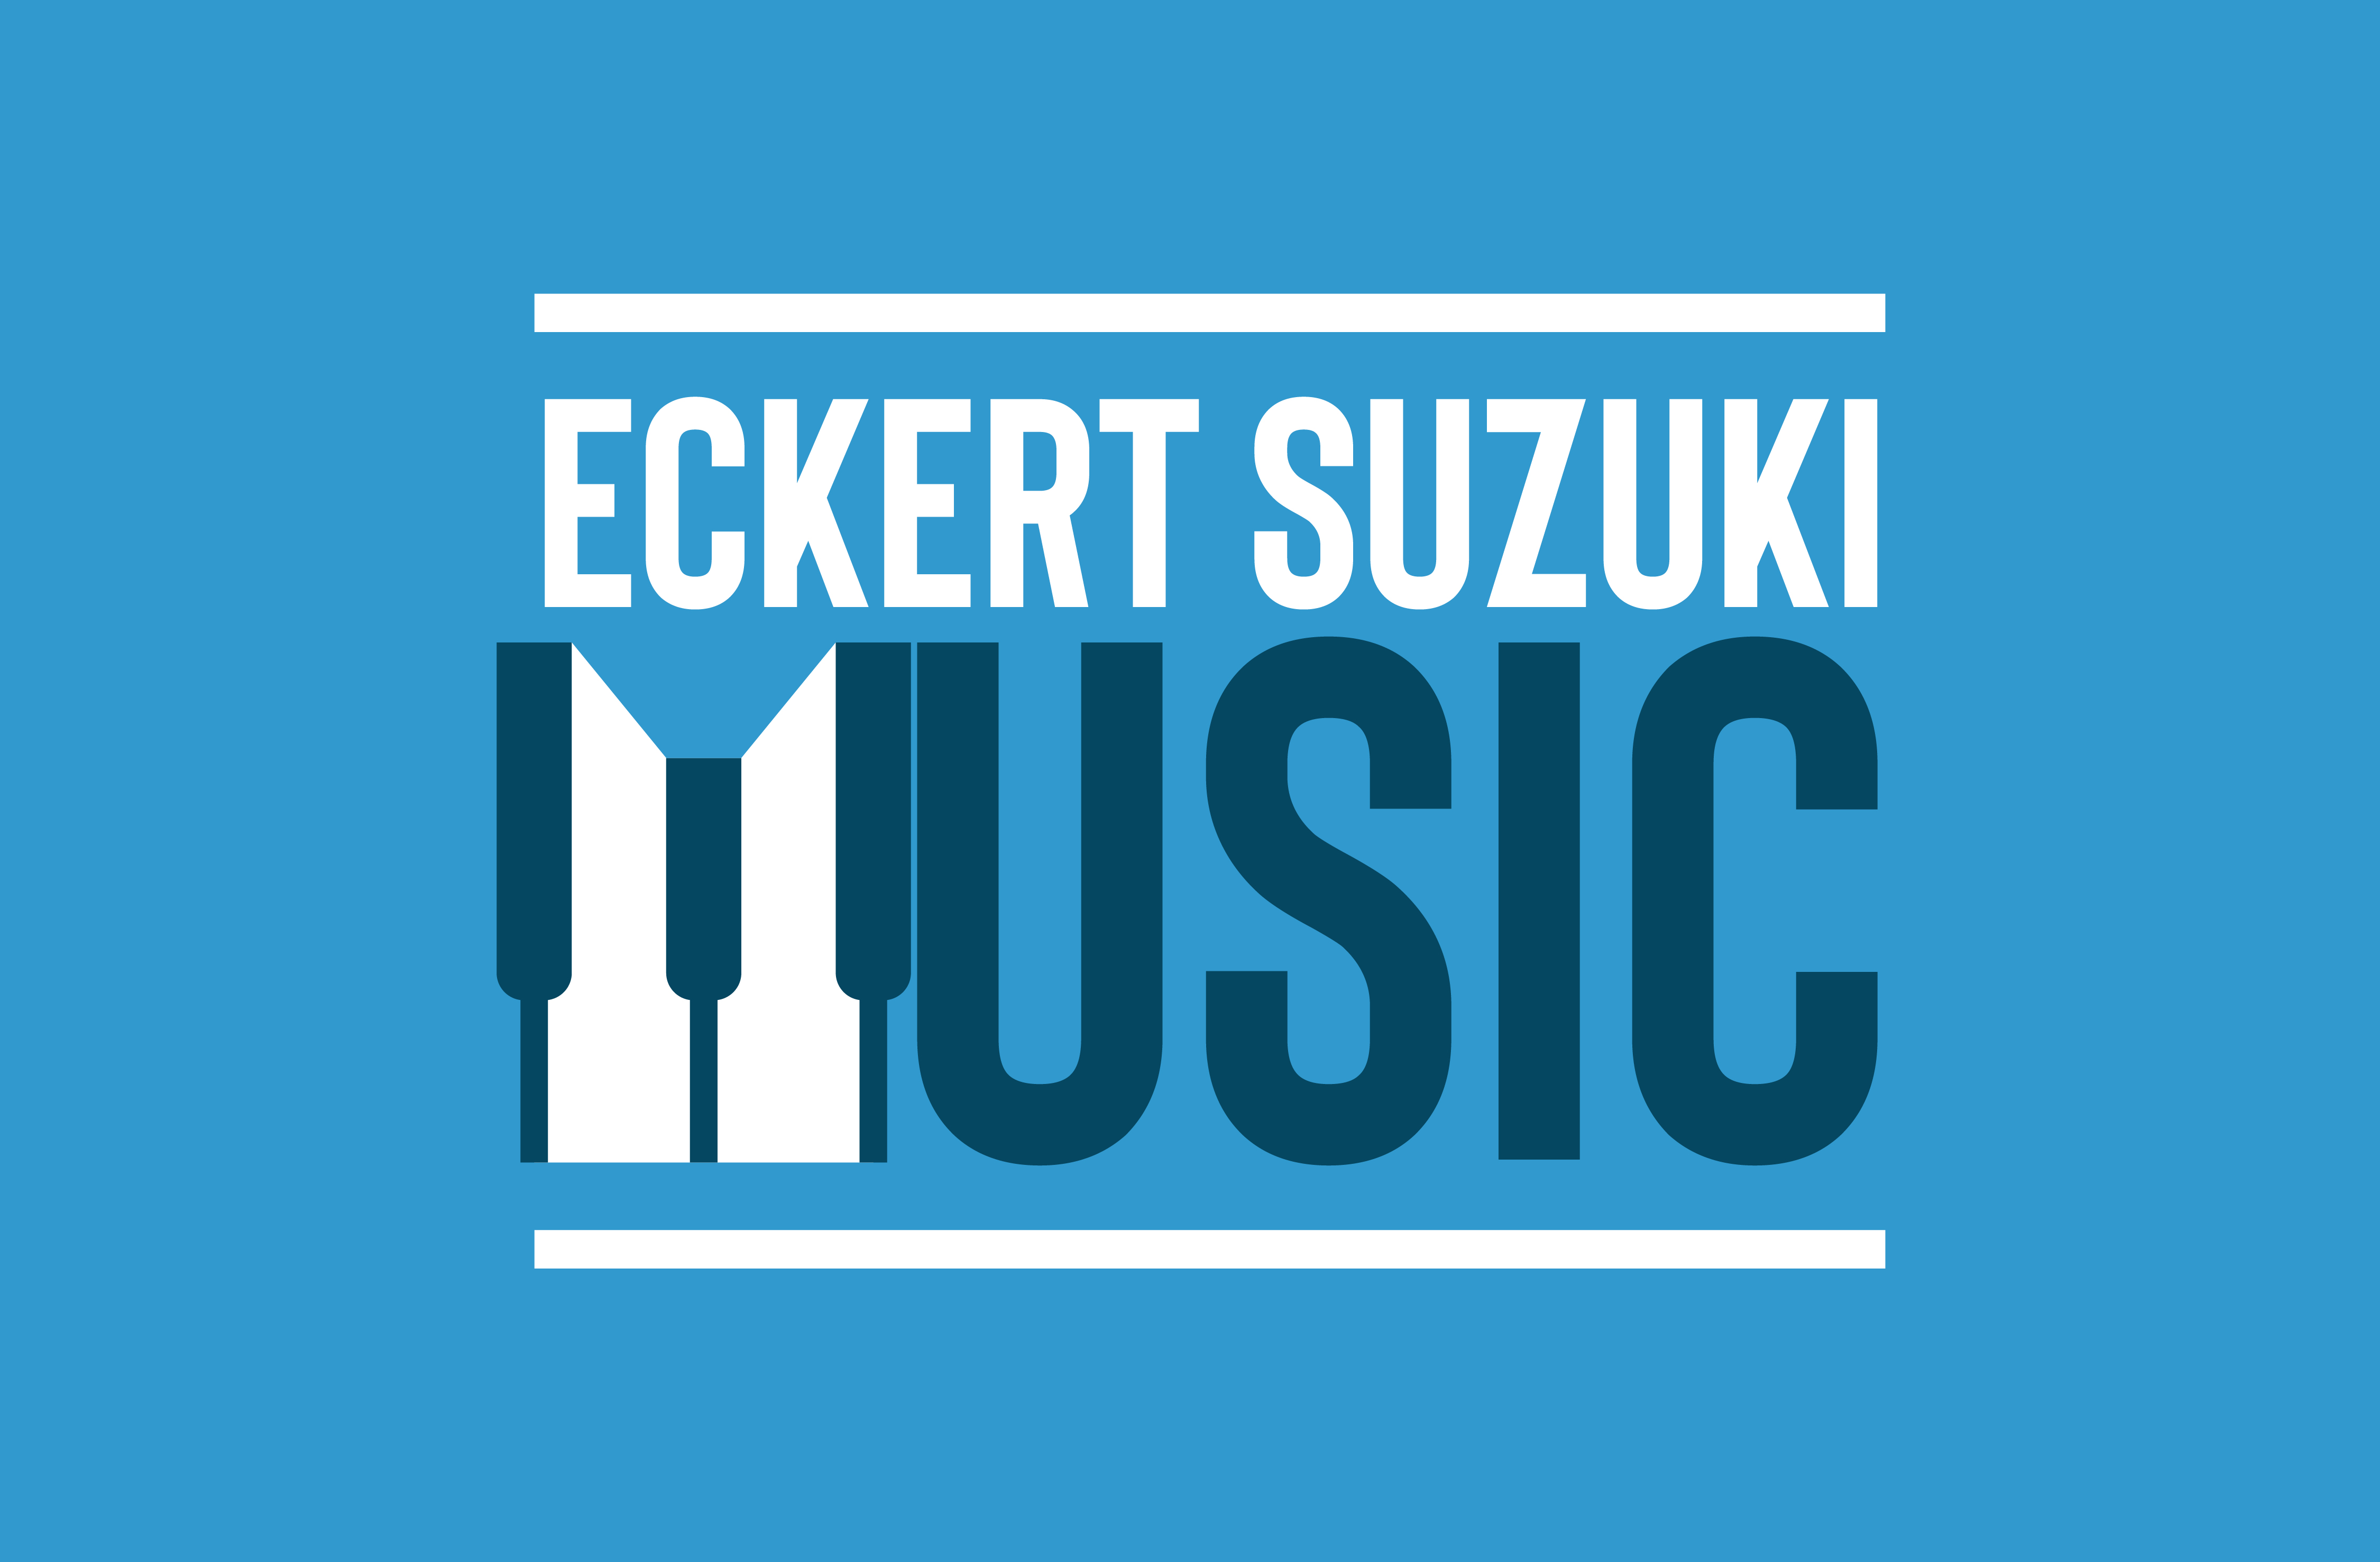 Eckert Suzuki Music